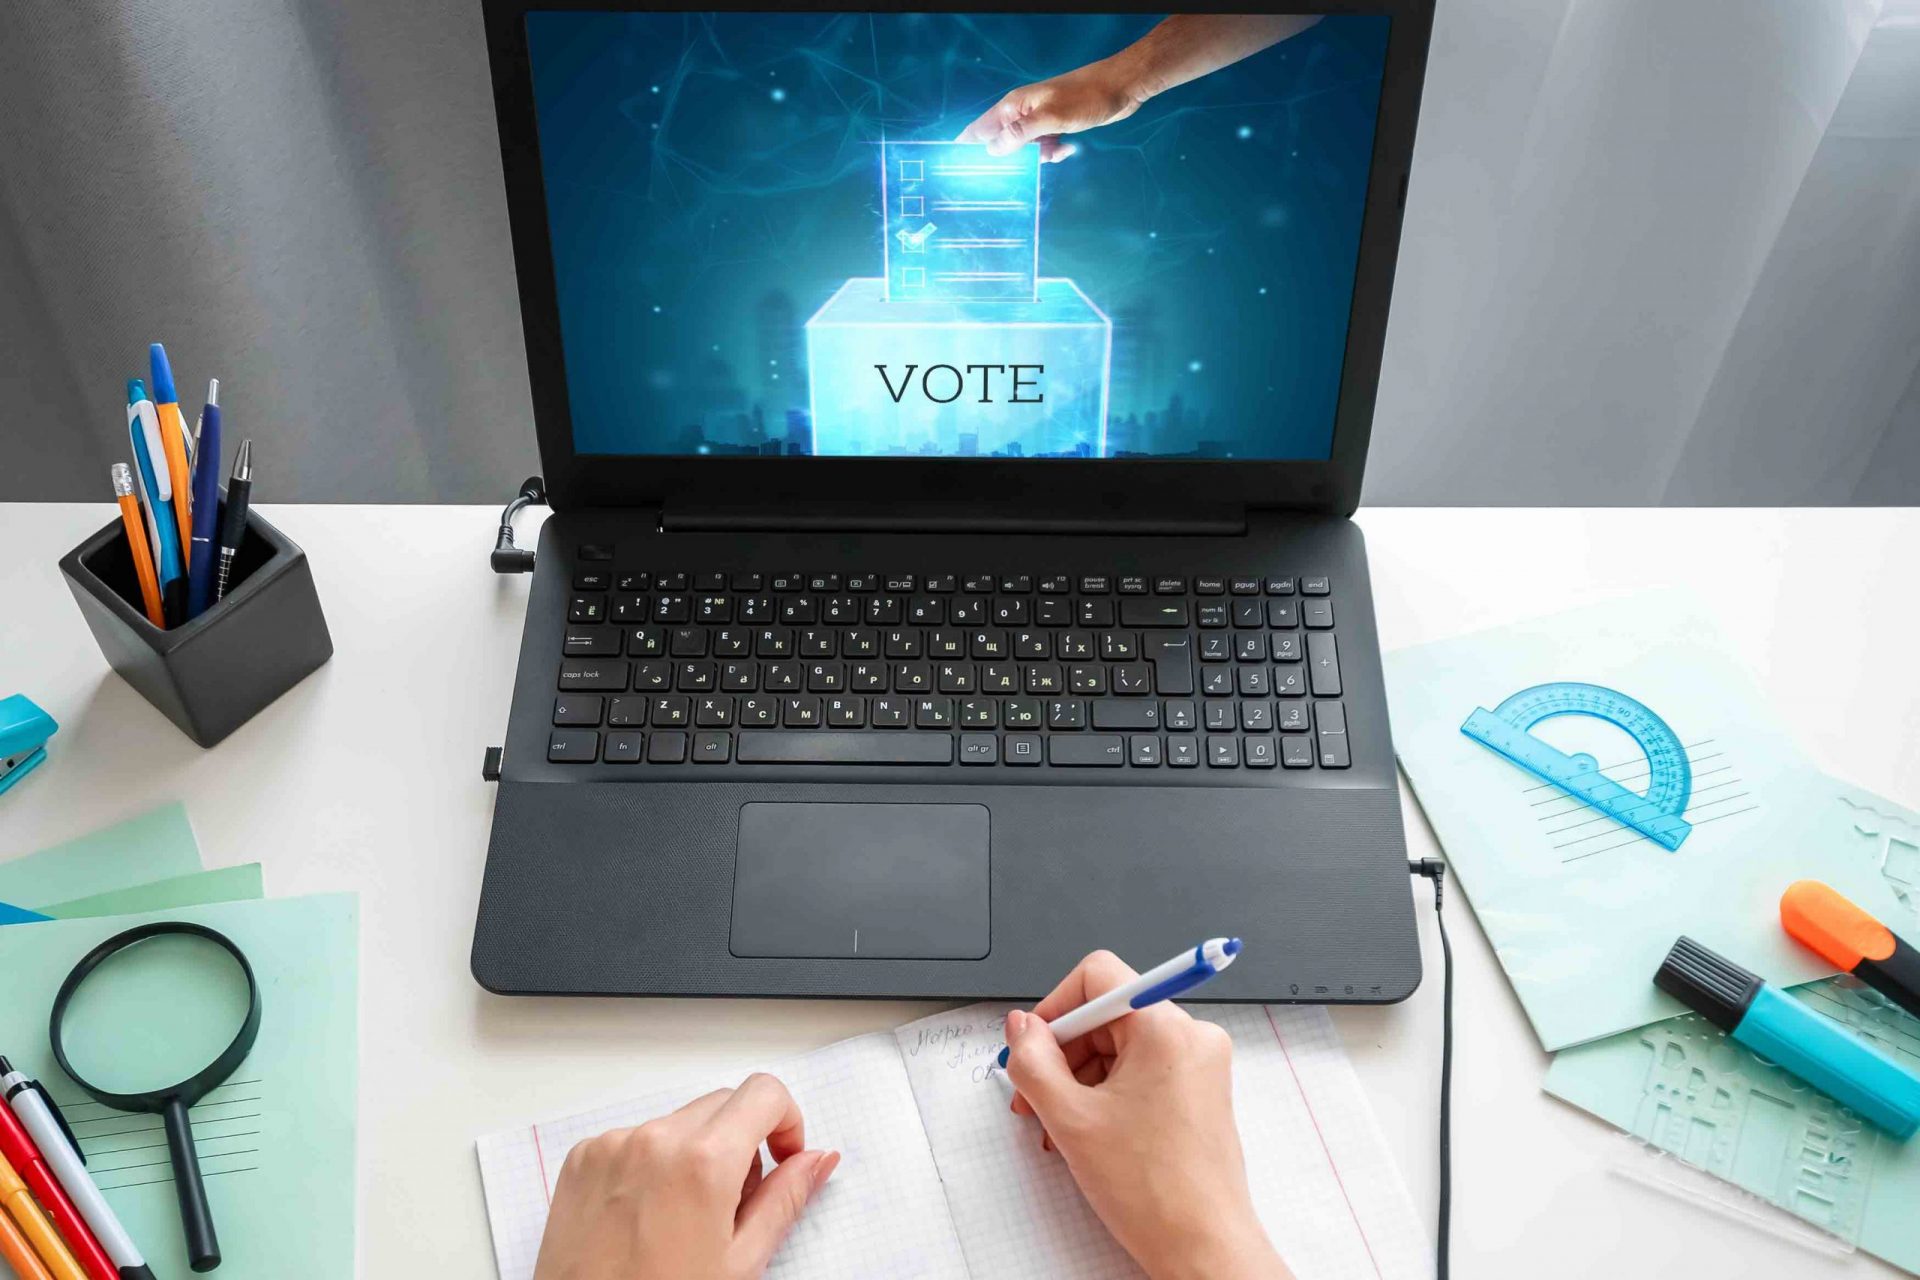 ηλεκτρονικη ψηφοφορια εκλογων